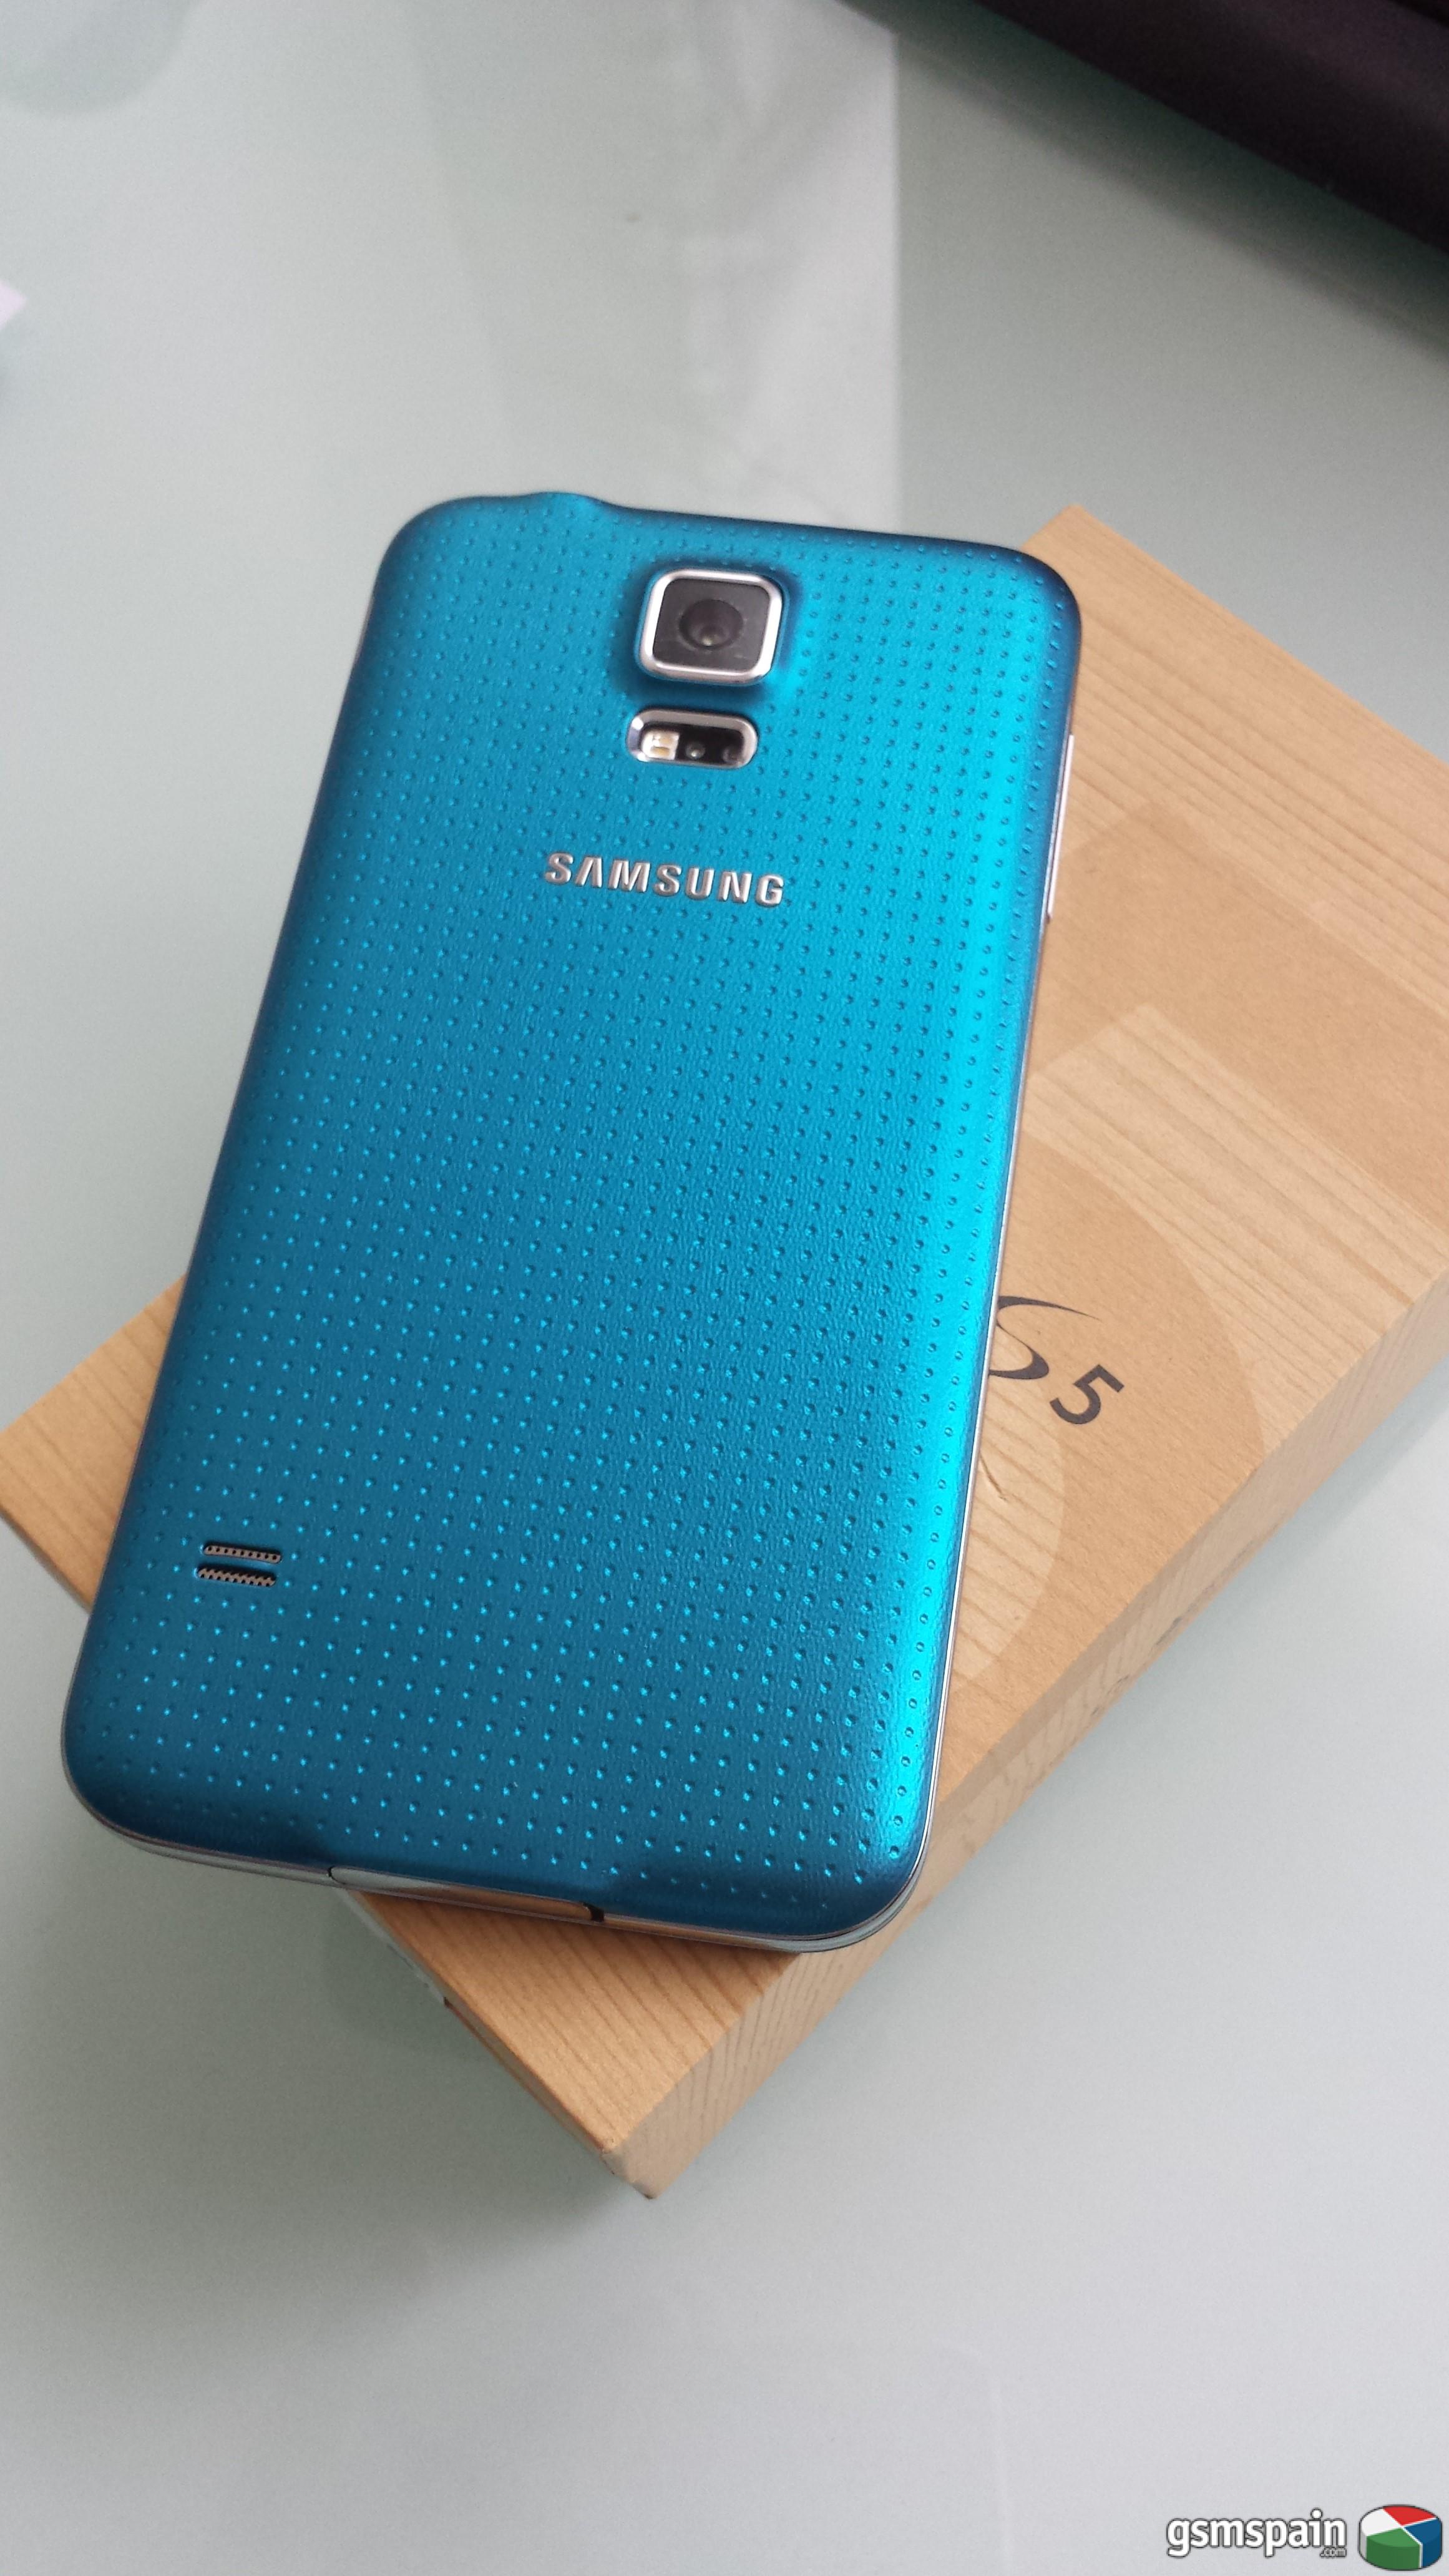 [VENDO] Samsung galaxy s5 precintado libre con factura PHONE HOUSE